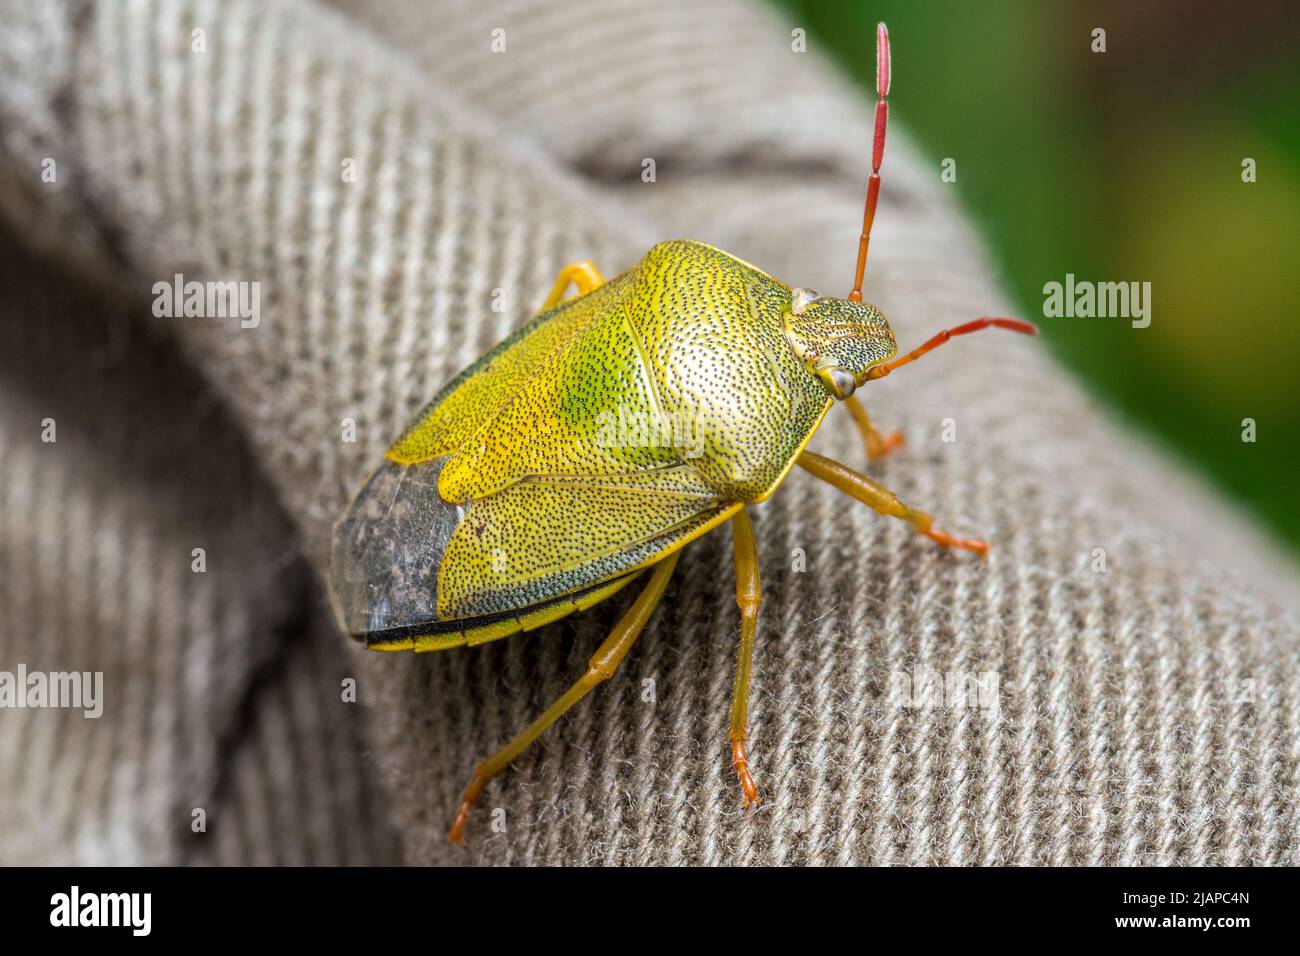 Un insecte de bouclier de gorge (Piezodorus lituratus) reposant sur la jambe du photographe. Prise près de Nosen's point, Seaham, Royaume-Uni. Banque D'Images